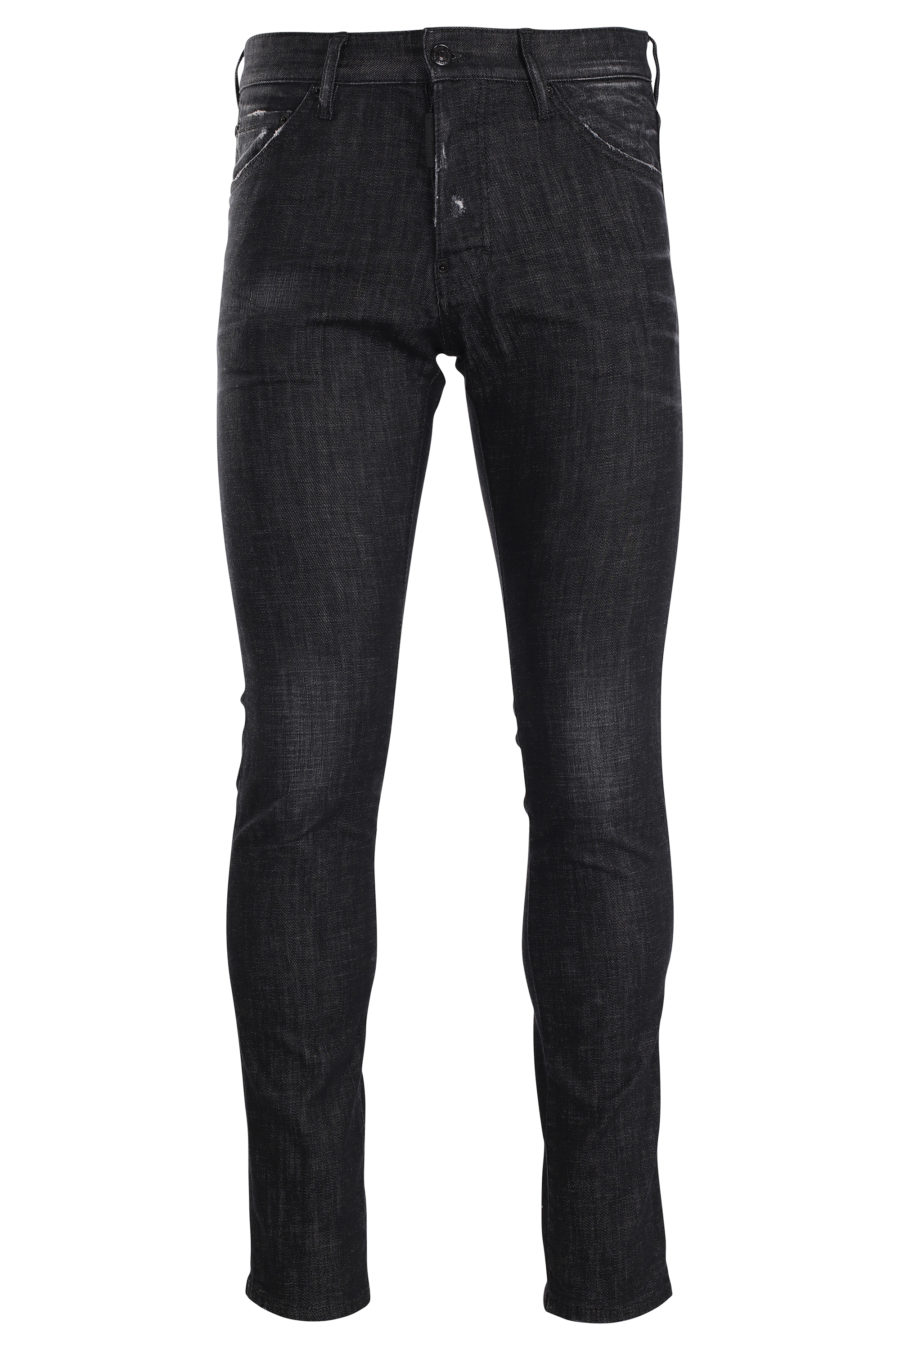 Jeans "ibra cool guy" noir - IMG 9979